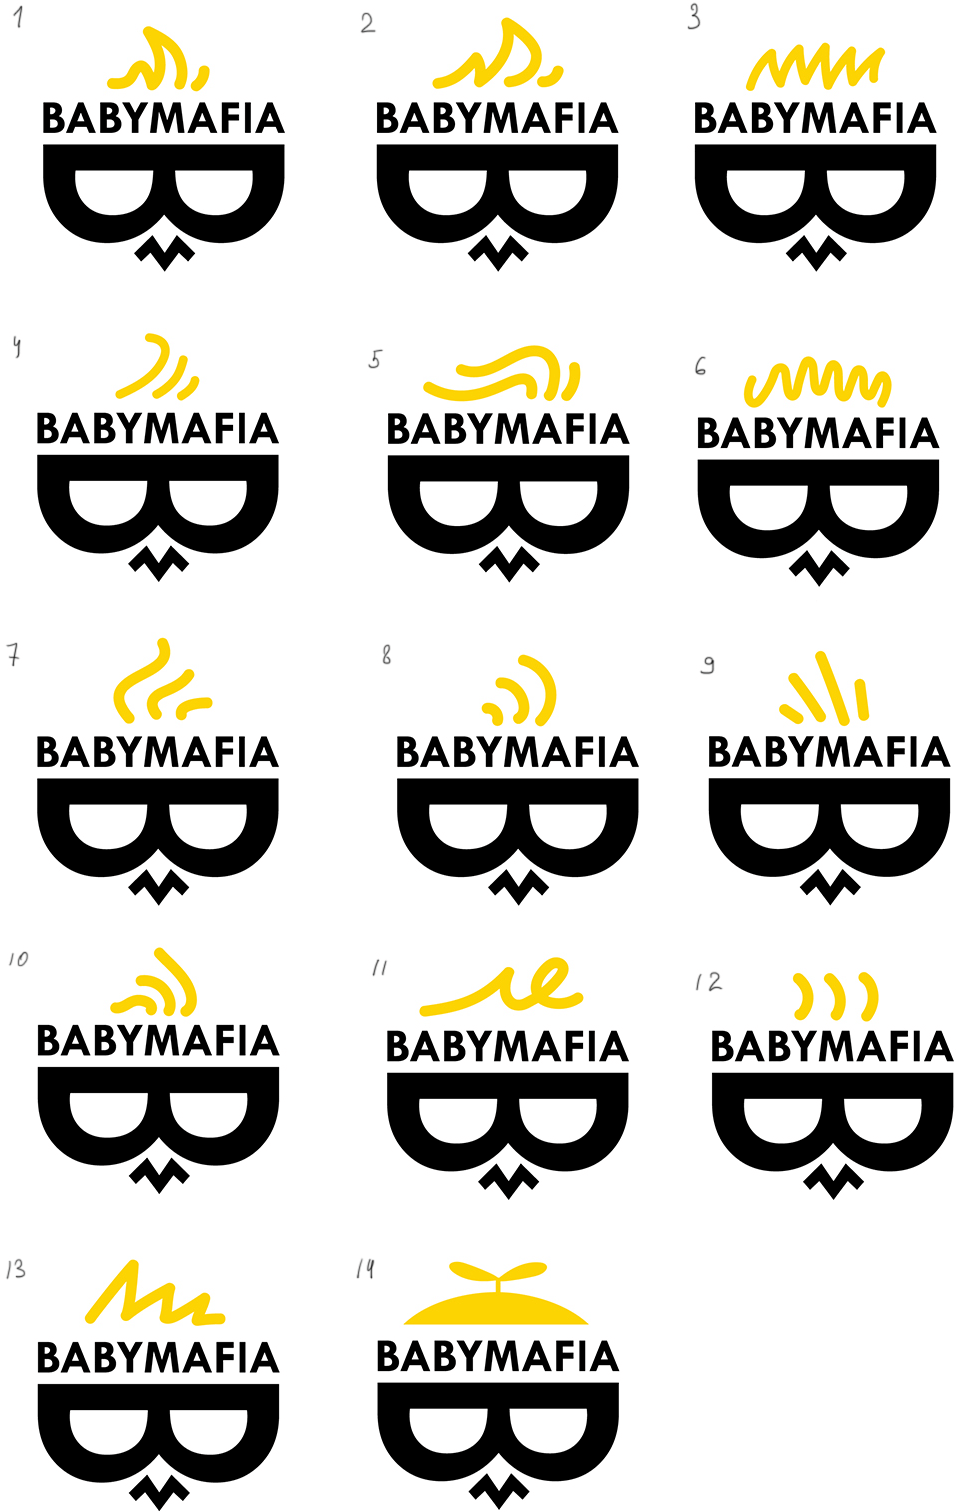 babymafia process 14